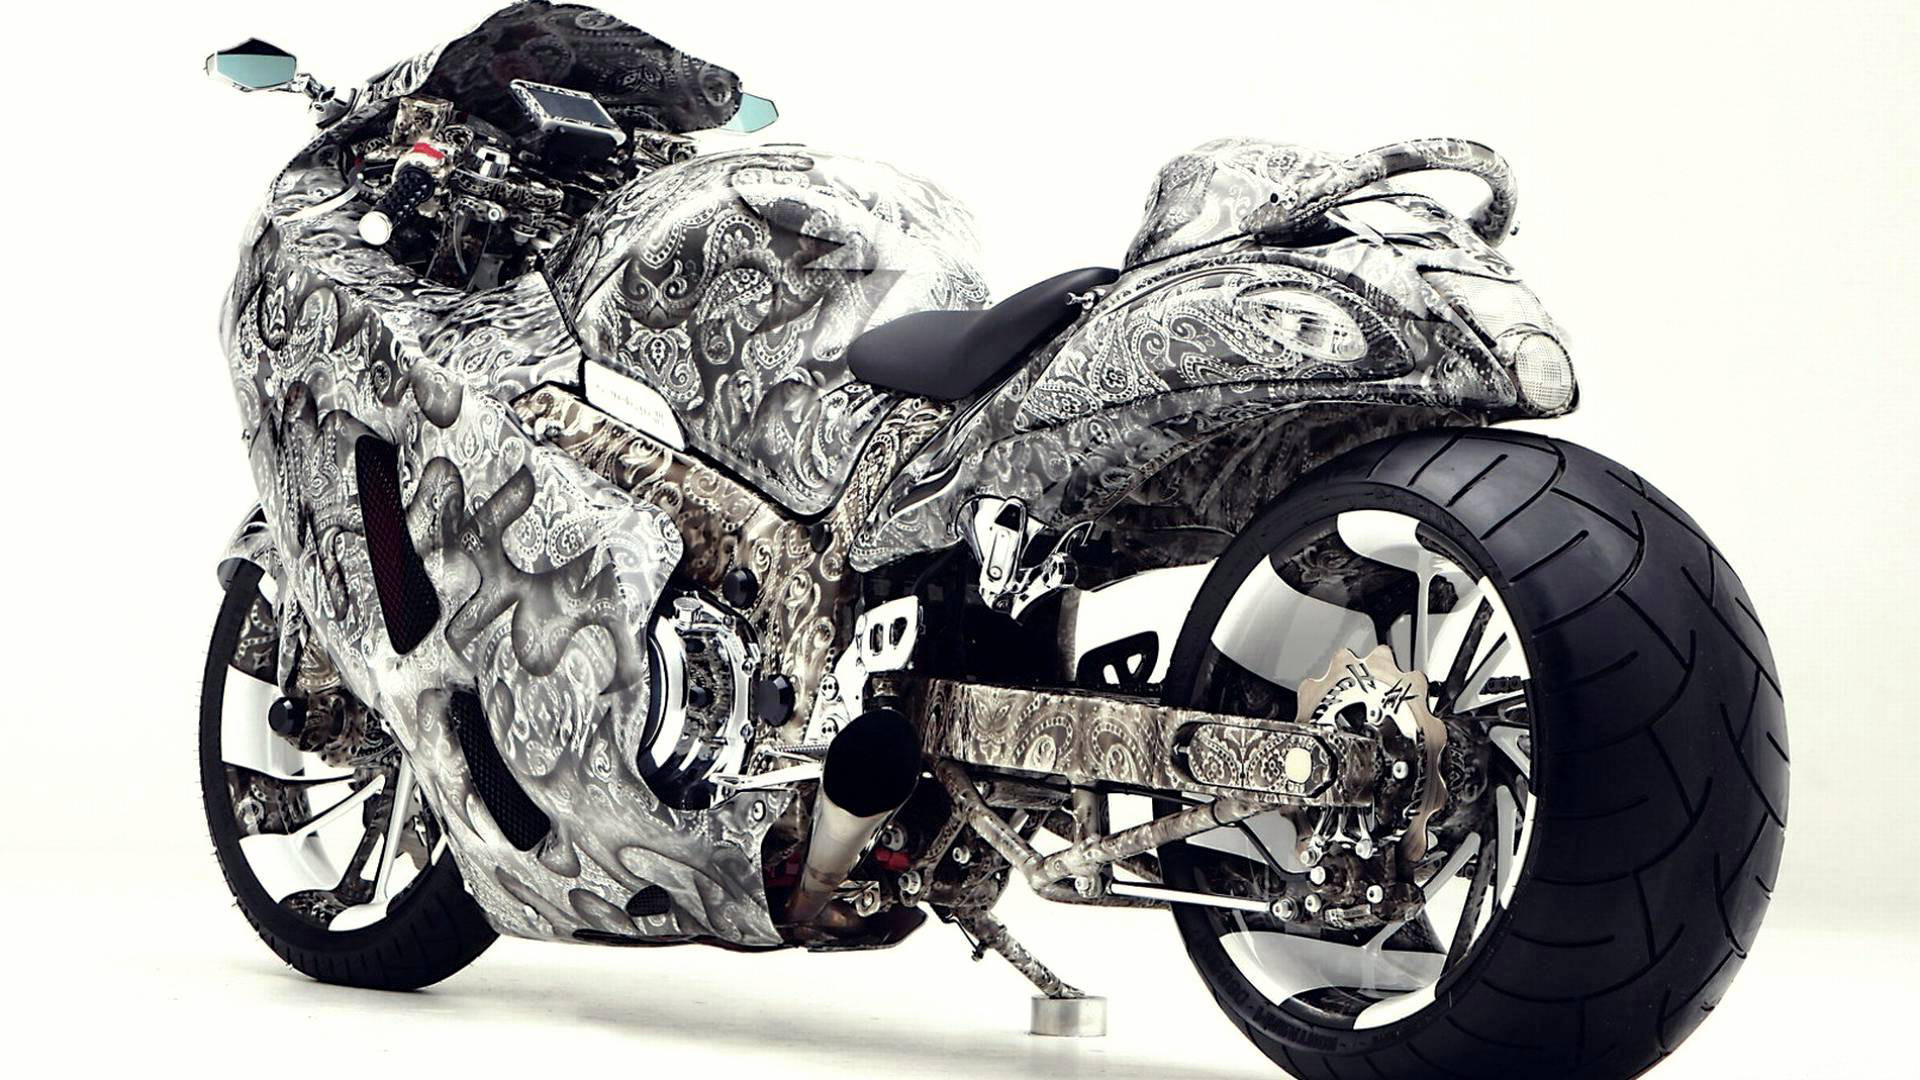 hayabusa bike hd wallpaper,veicolo terrestre,veicolo,motociclo,veicolo a motore,corse di superbike